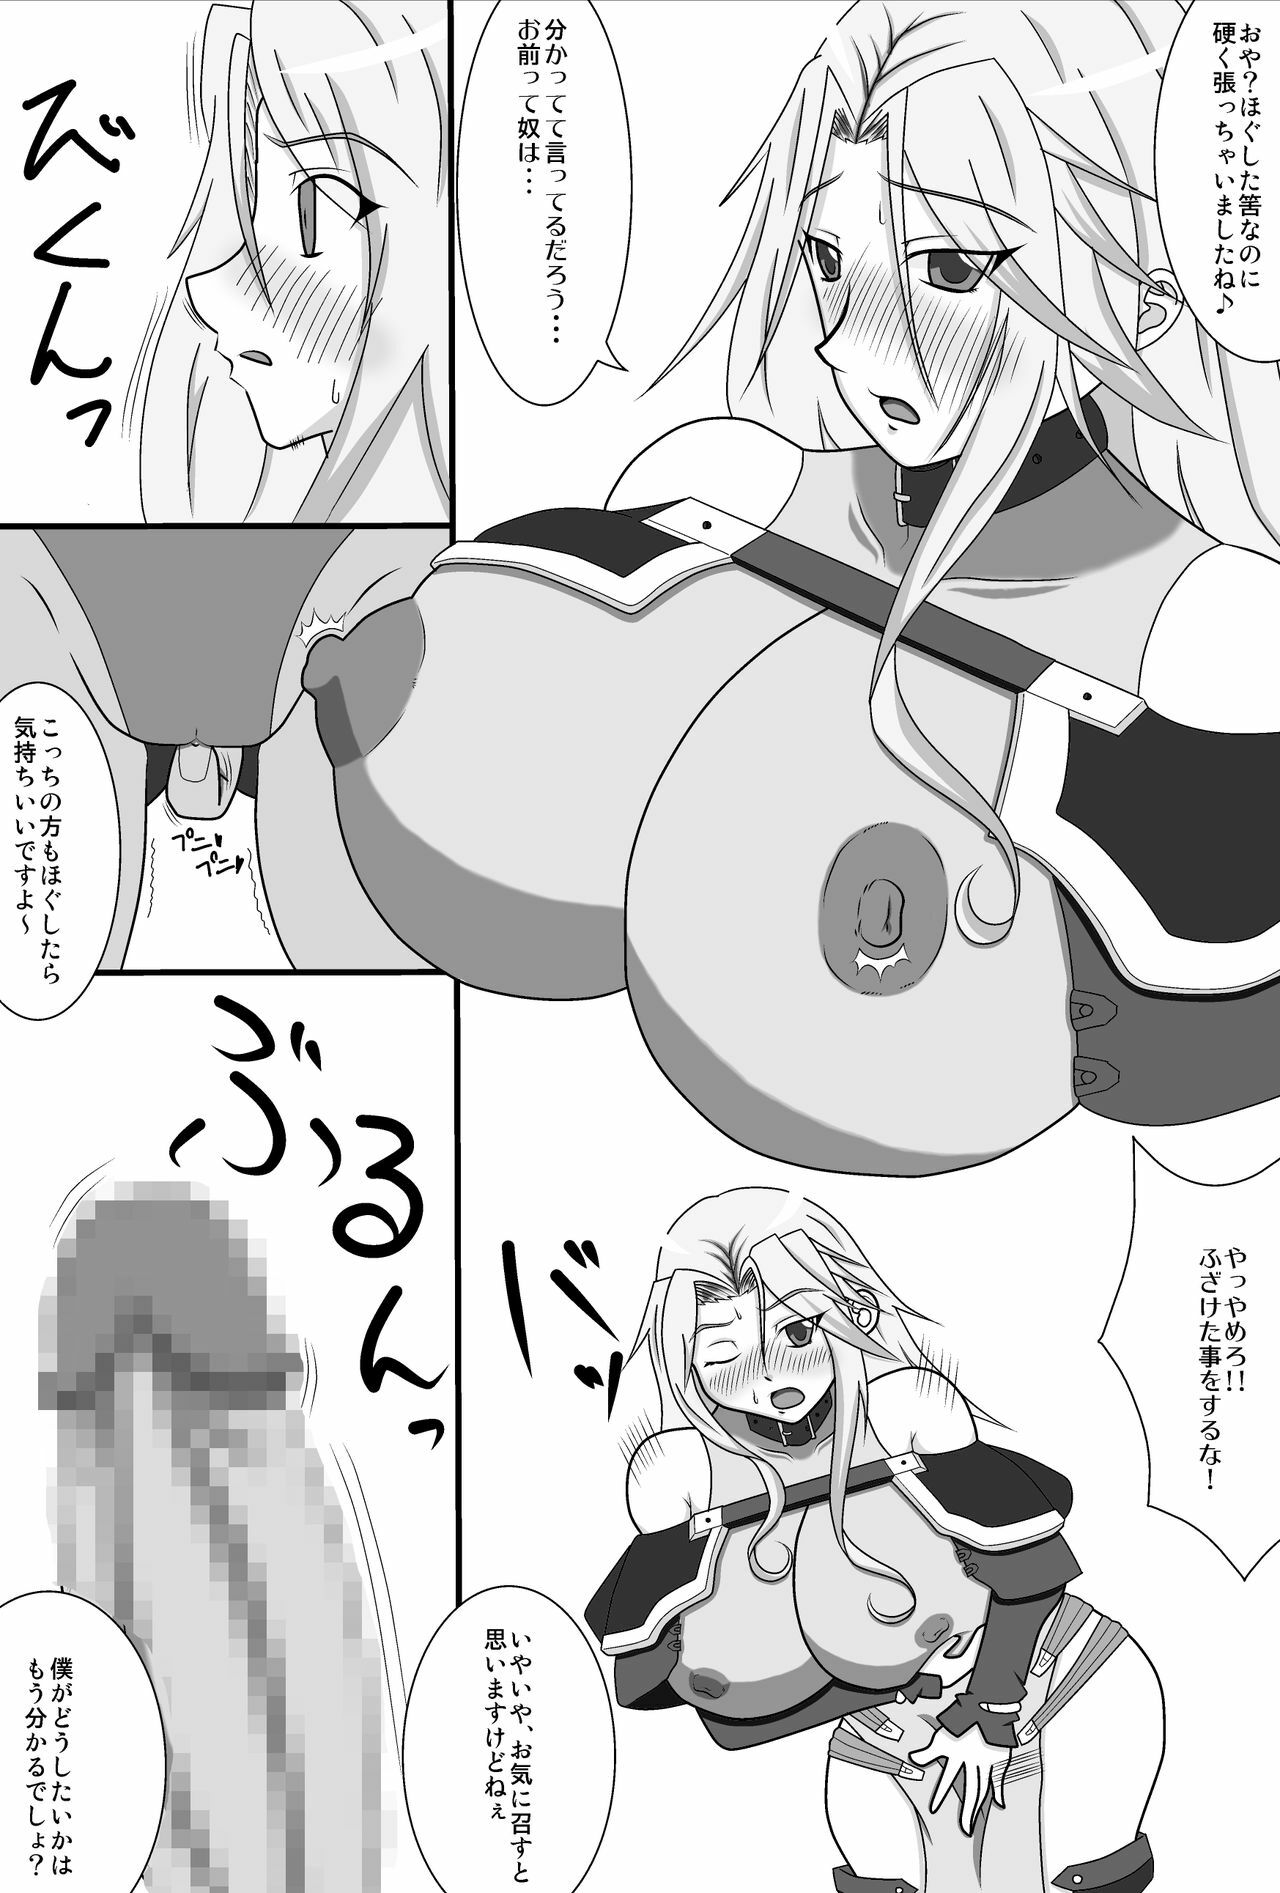 [Hiropon] LamiHame (Super Robot Wars OG) page 4 full